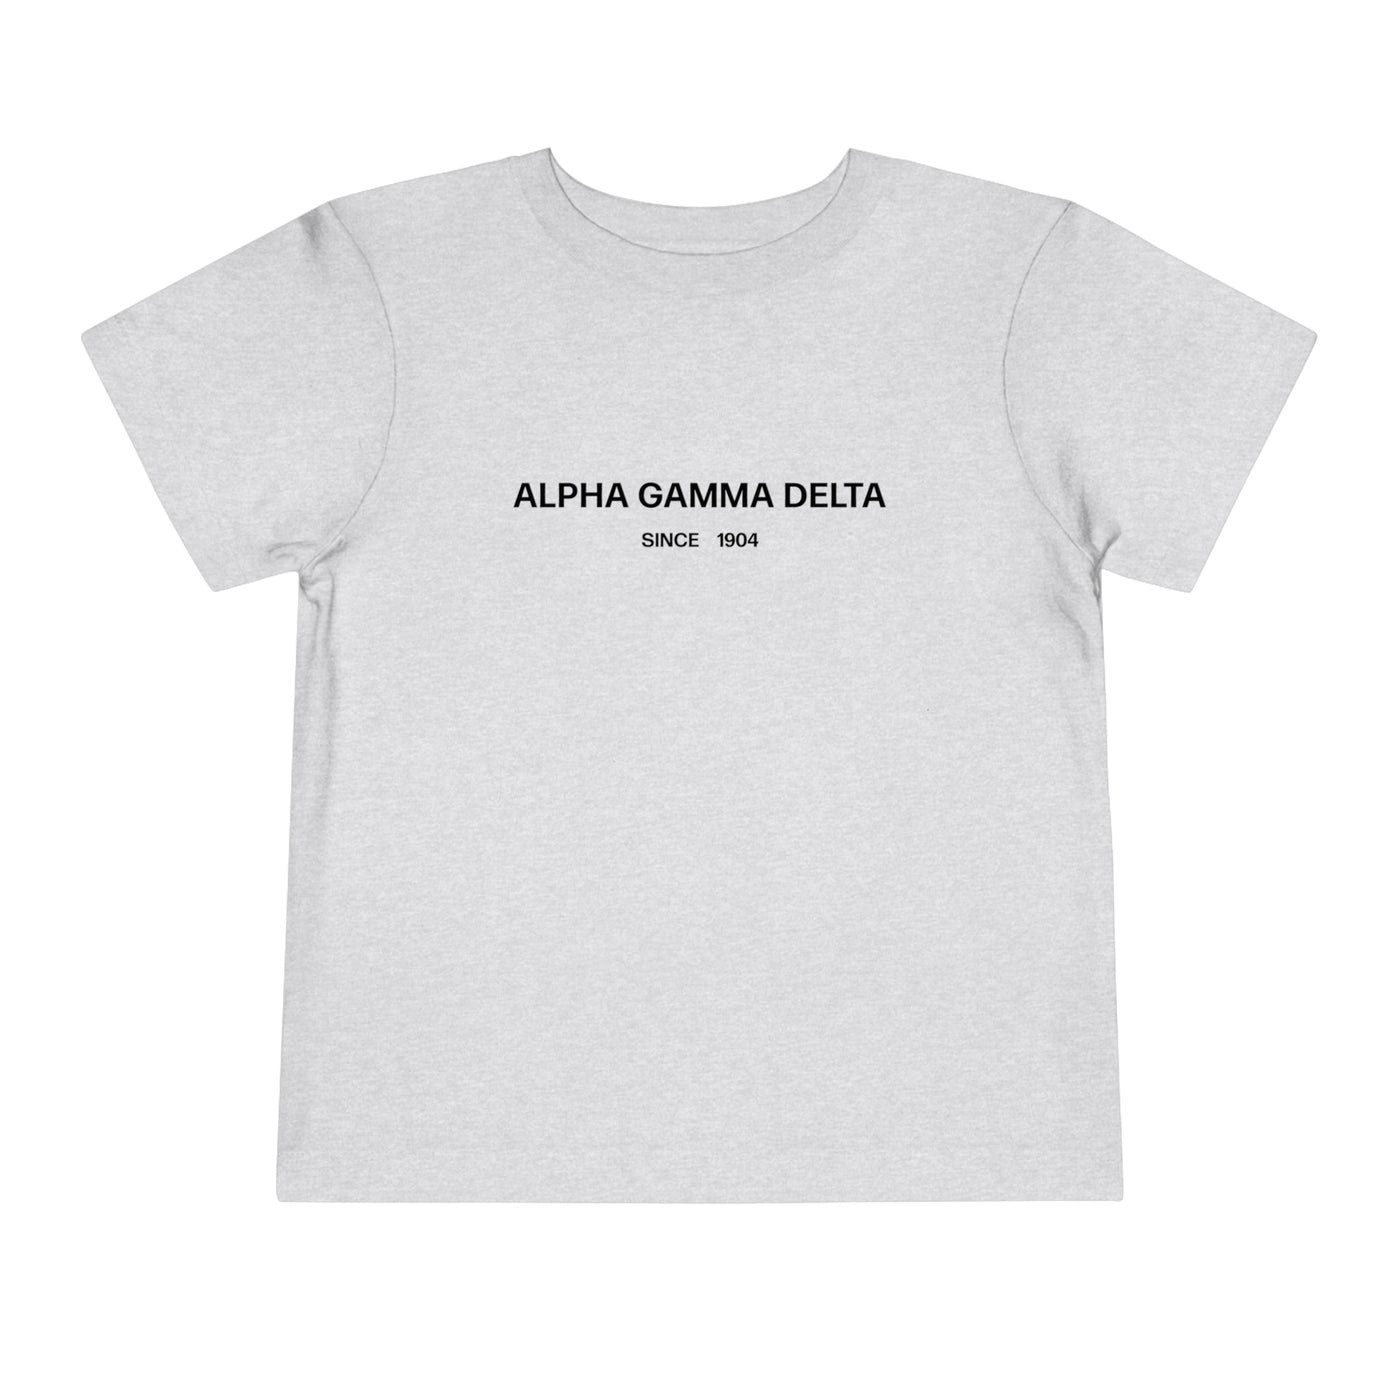 Alpha Gamma Delta Sorority Baby Tee Crop Top